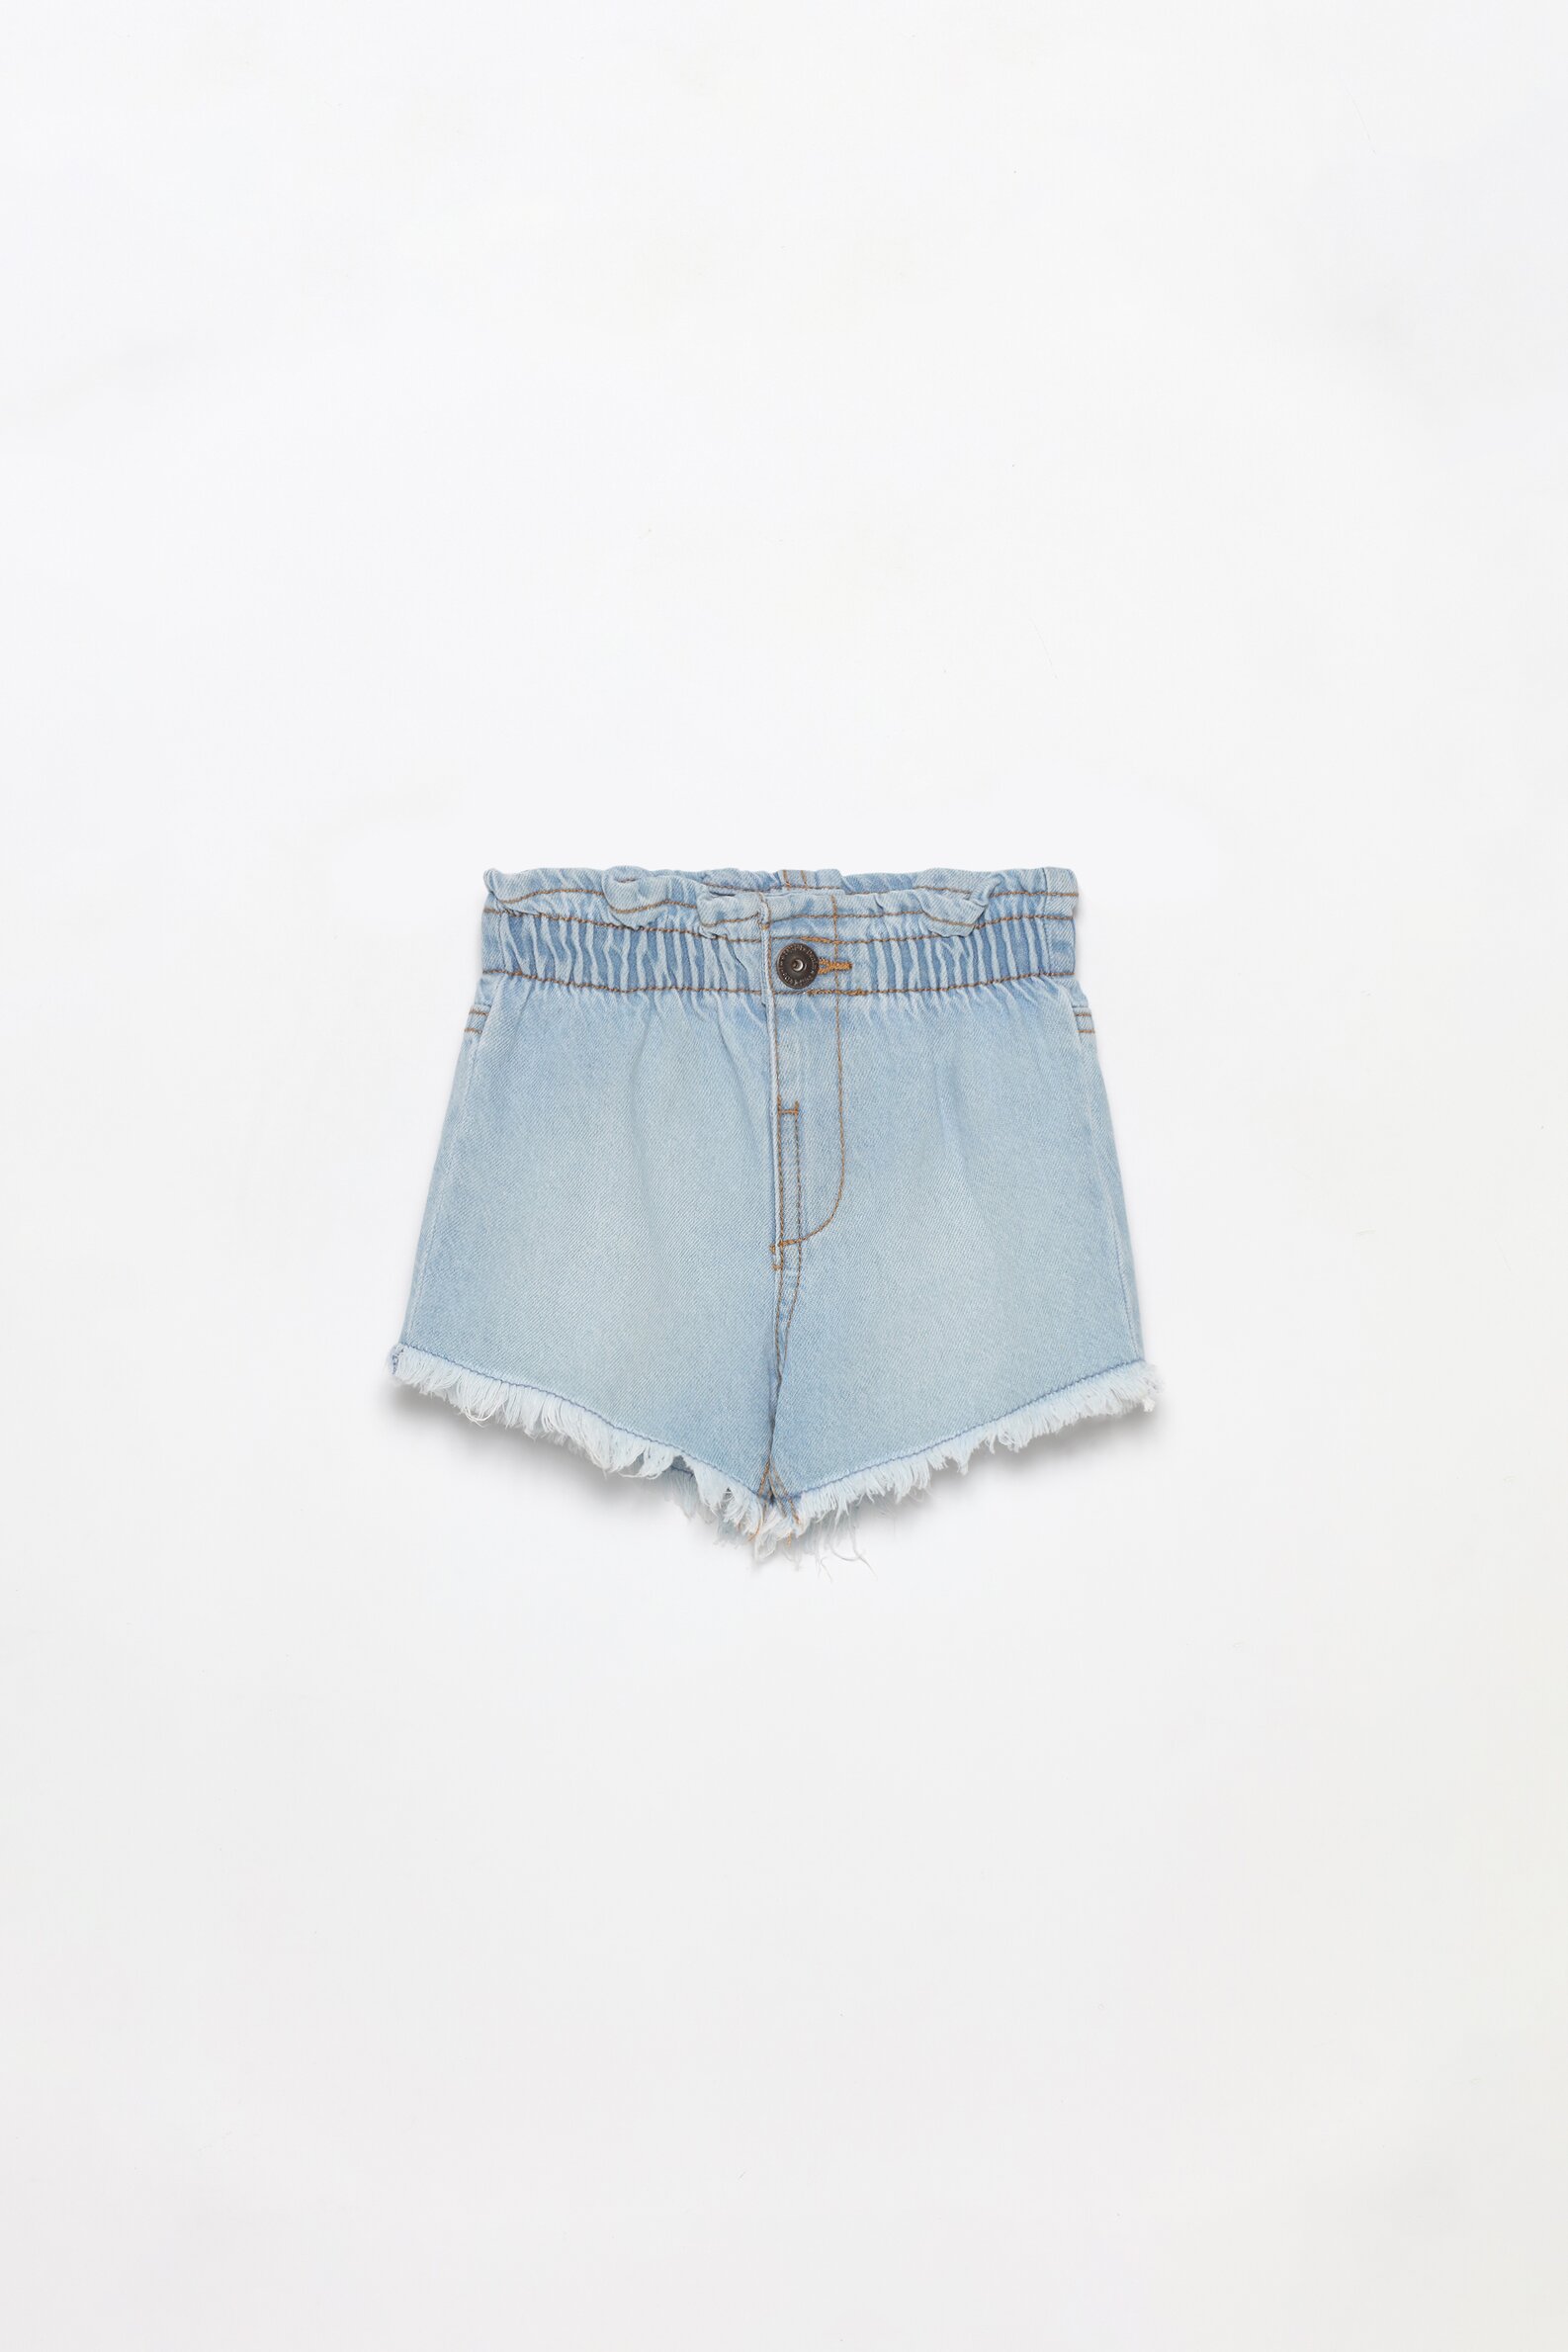 Paperbag Shorts, Women's Paperbag Denim Shorts